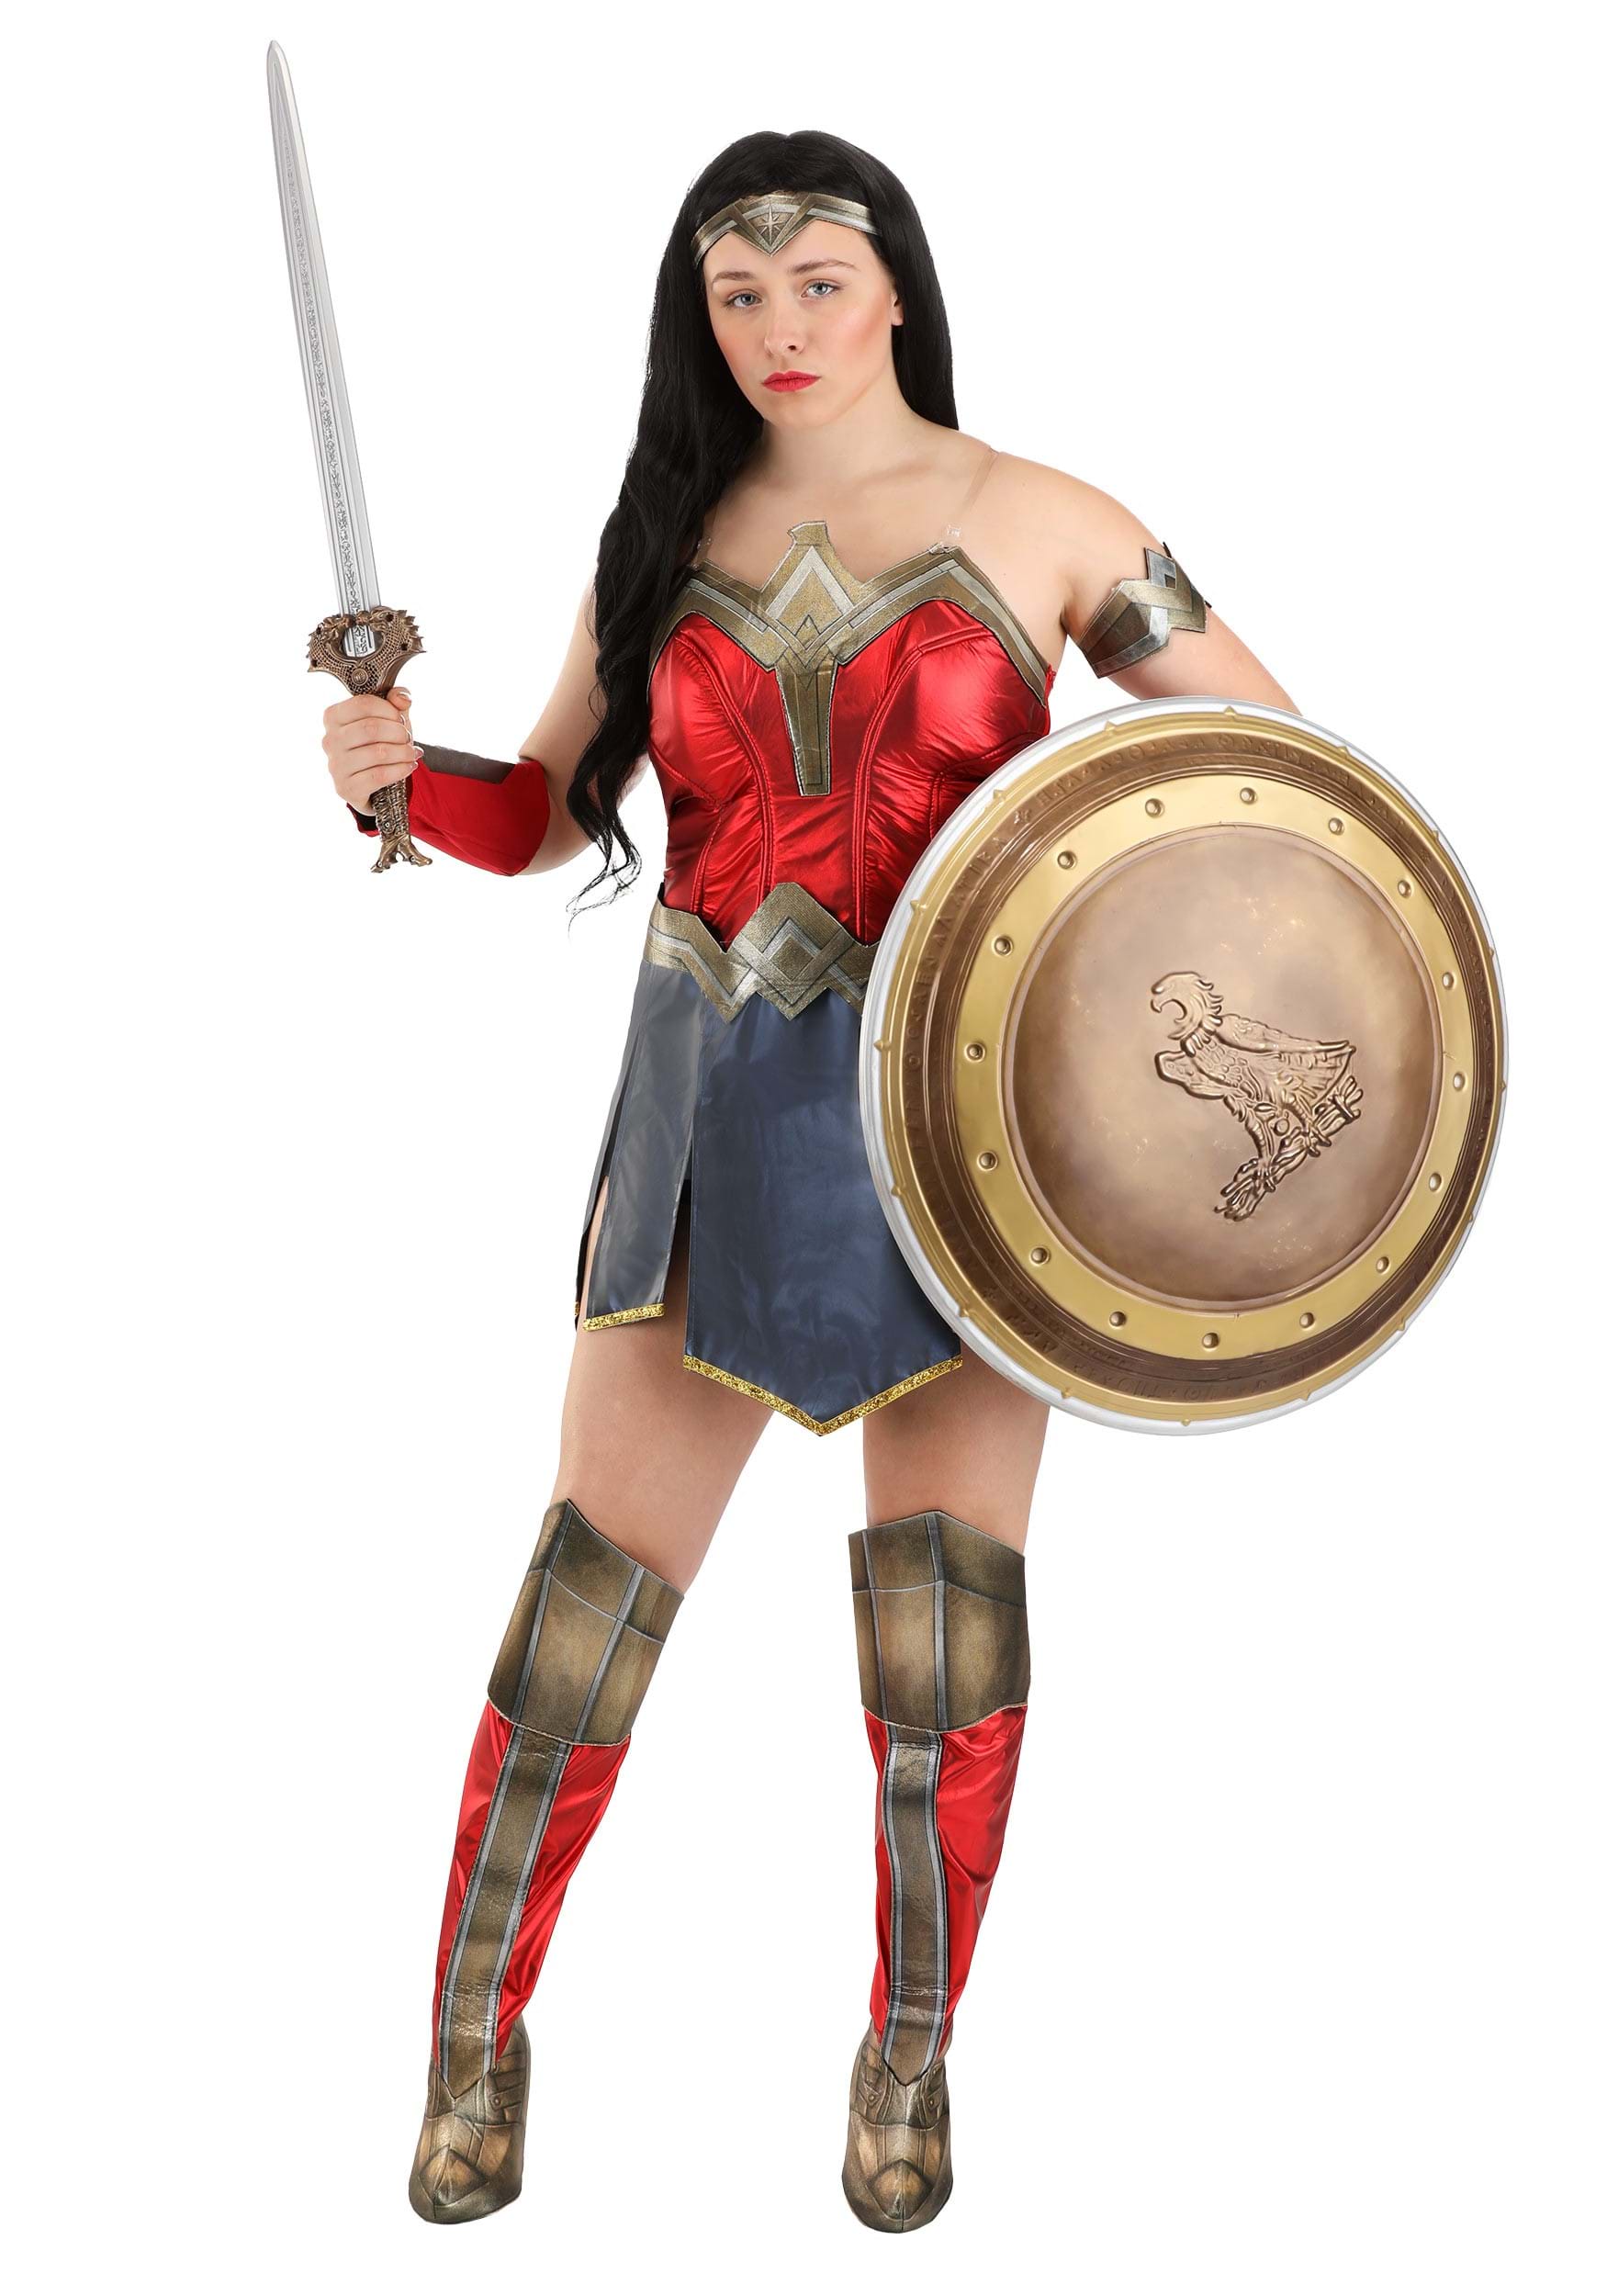 Deluxe Wonder Woman Women's Costume